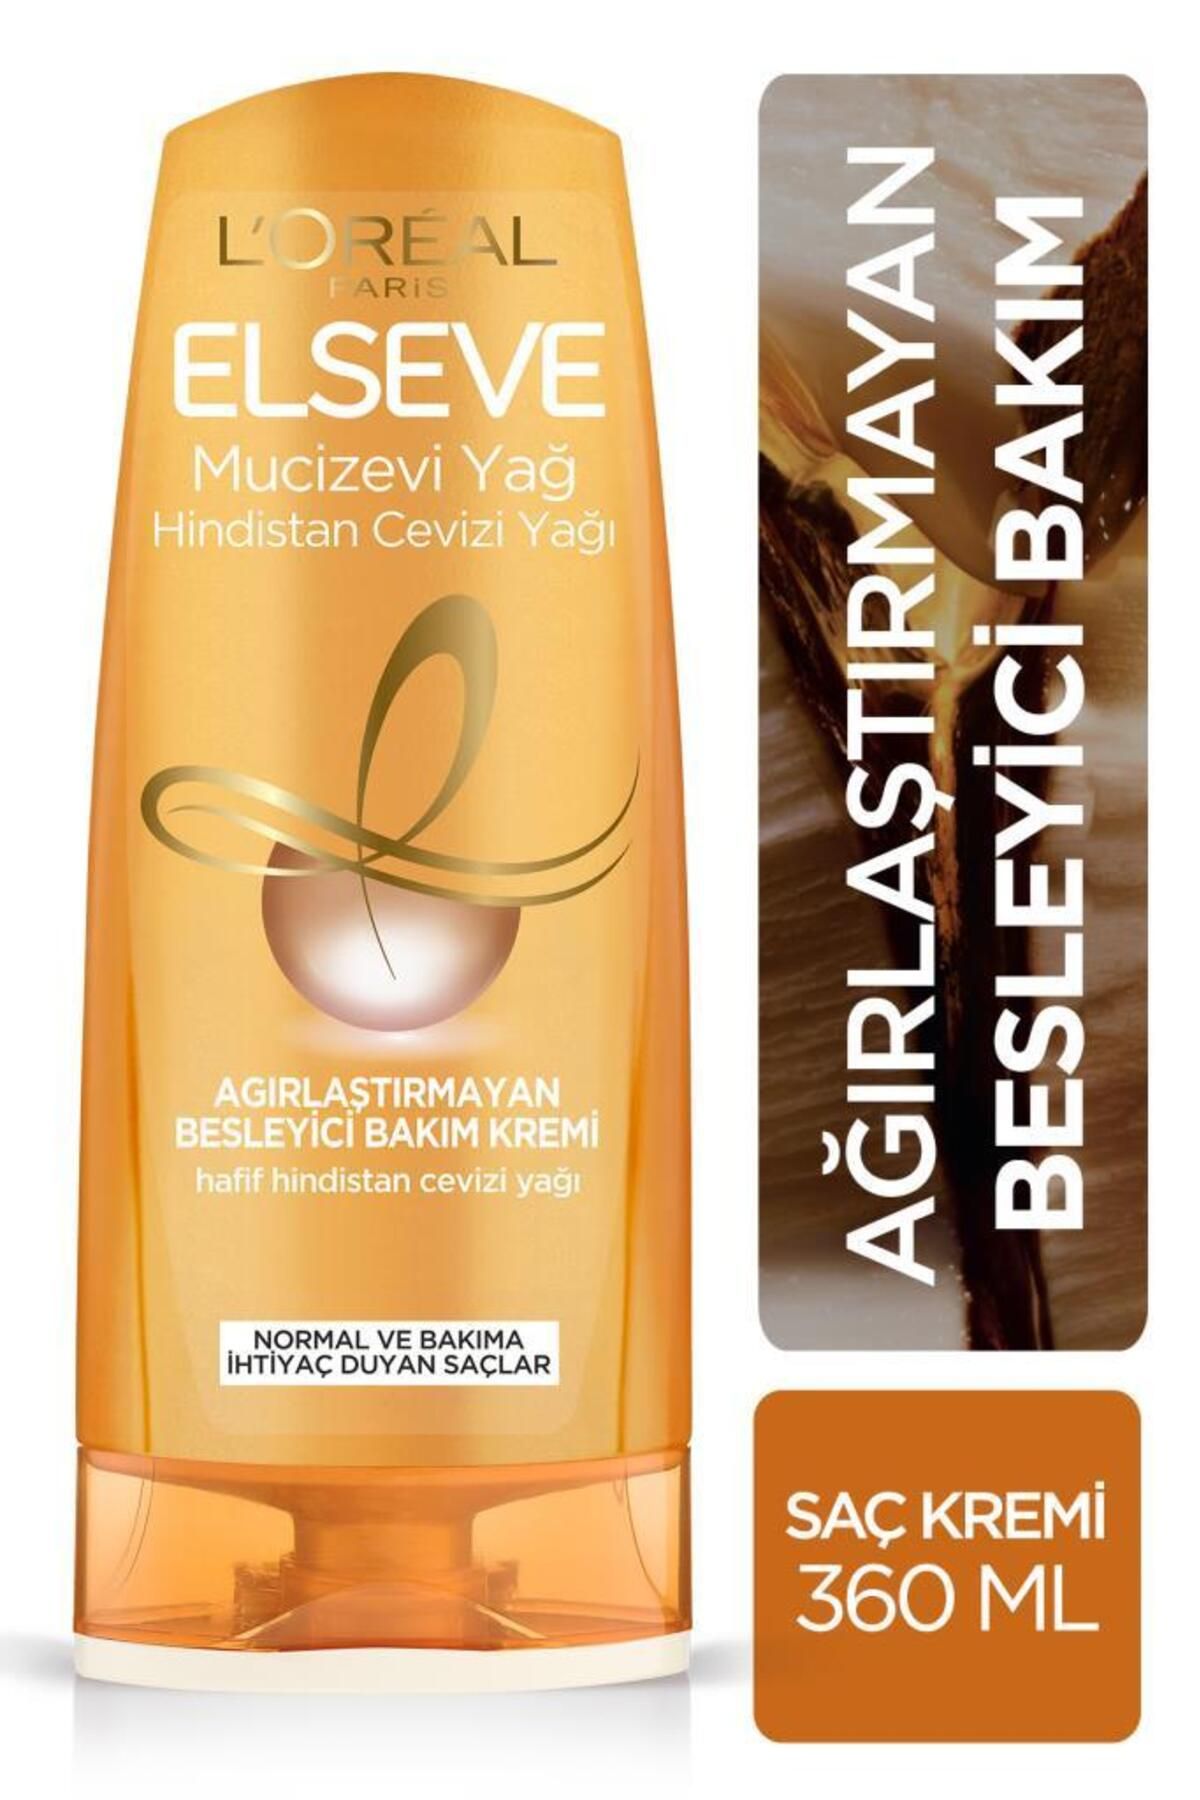 Elseve L'oréal Paris Mucizevi Hindistan Cevizi Yağı Ağırlaştırmayan Besleyici Bakım Kremi 360 ml